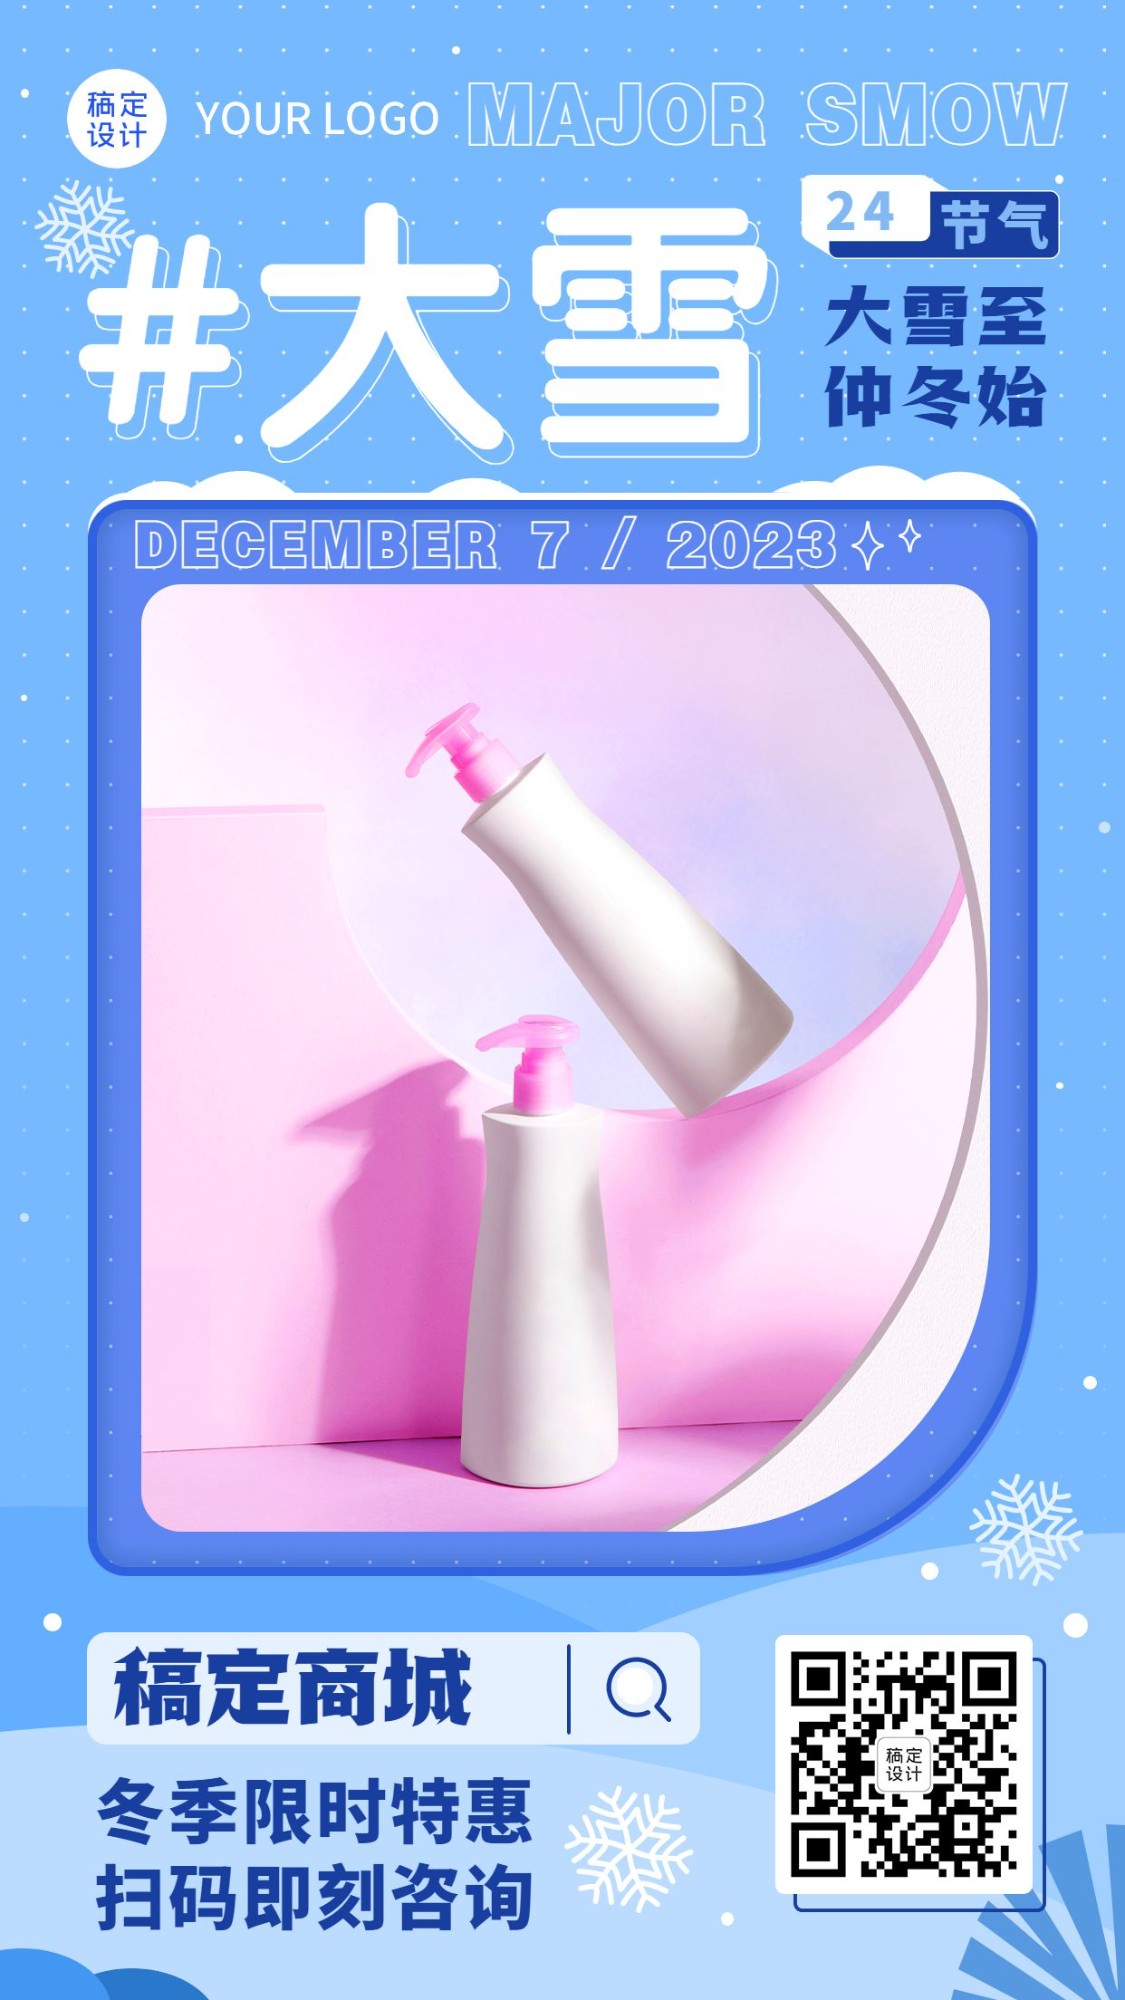 大雪祝福产品展示图框类小清新手机海报